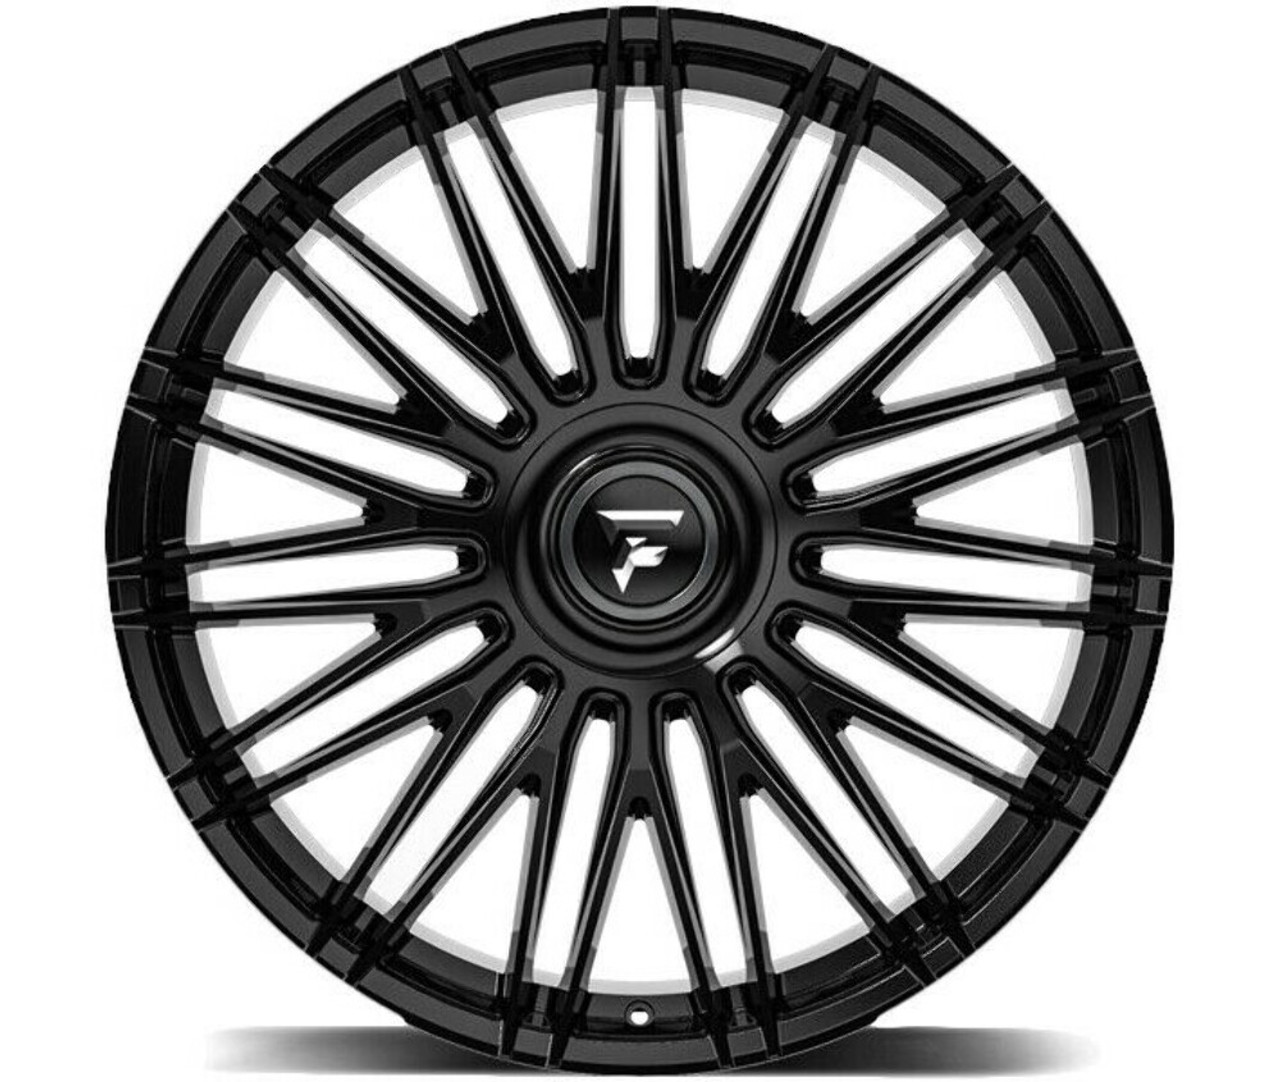 Set 4 24" Fittipaldi Street FS369B Gloss Black 24x10 Wheels 5x112 5x120 35mm Rim